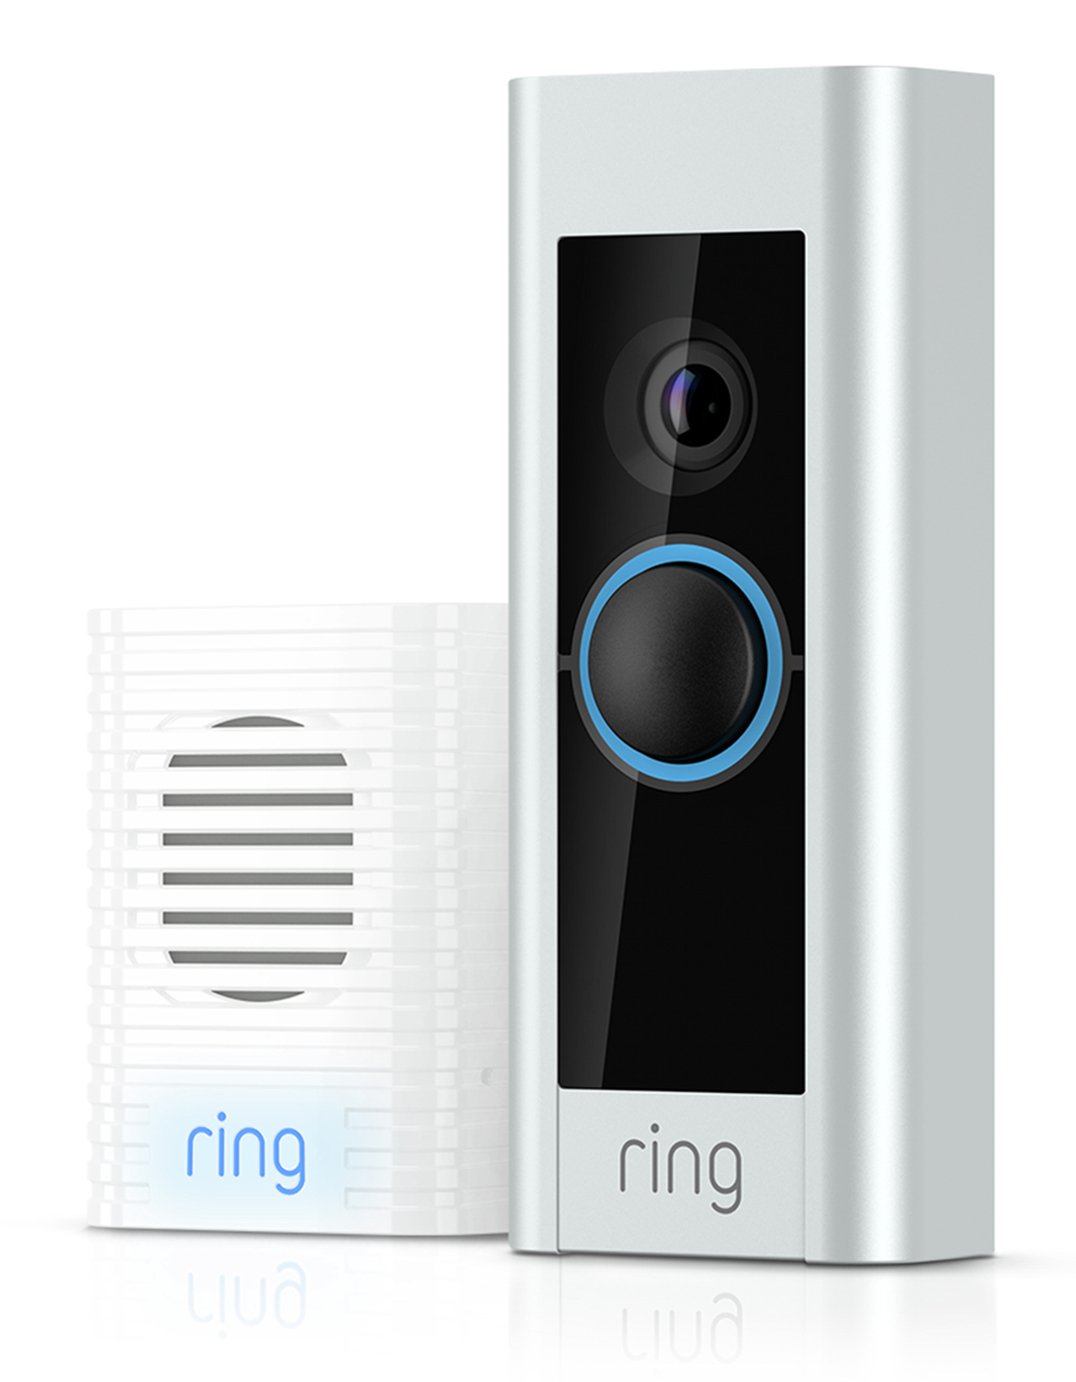 ring doorbell 2 argos